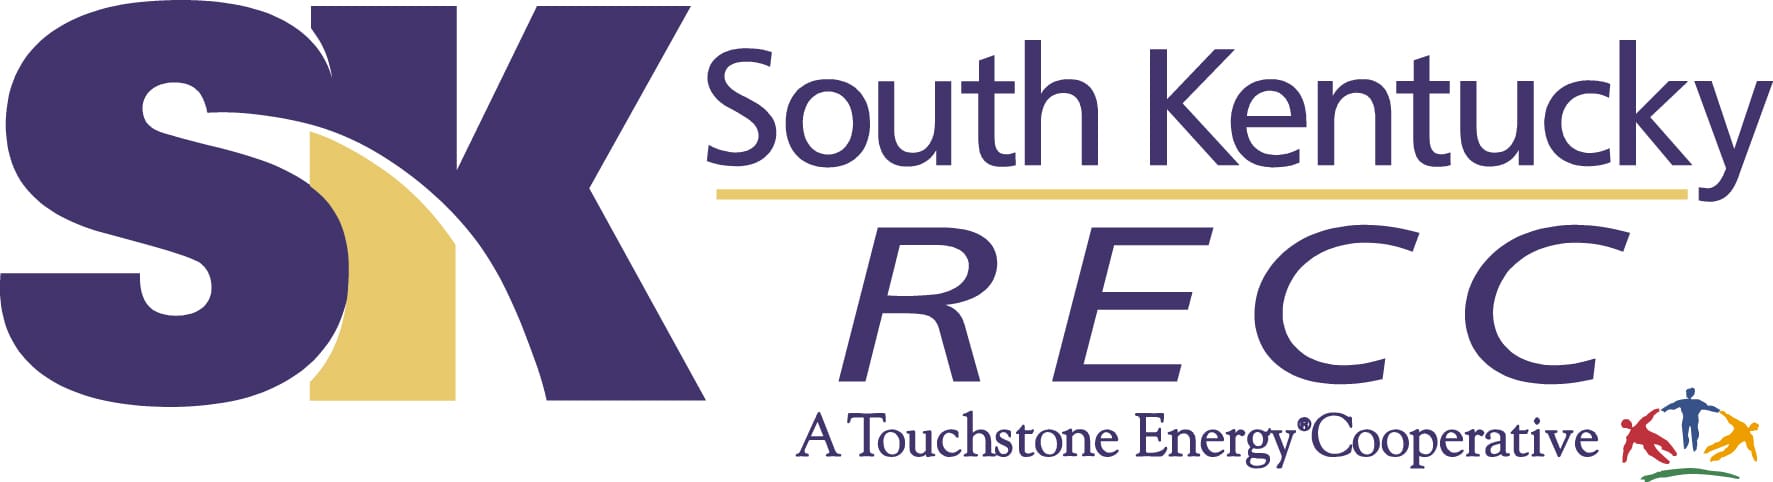 South Kentucky RECC Logo